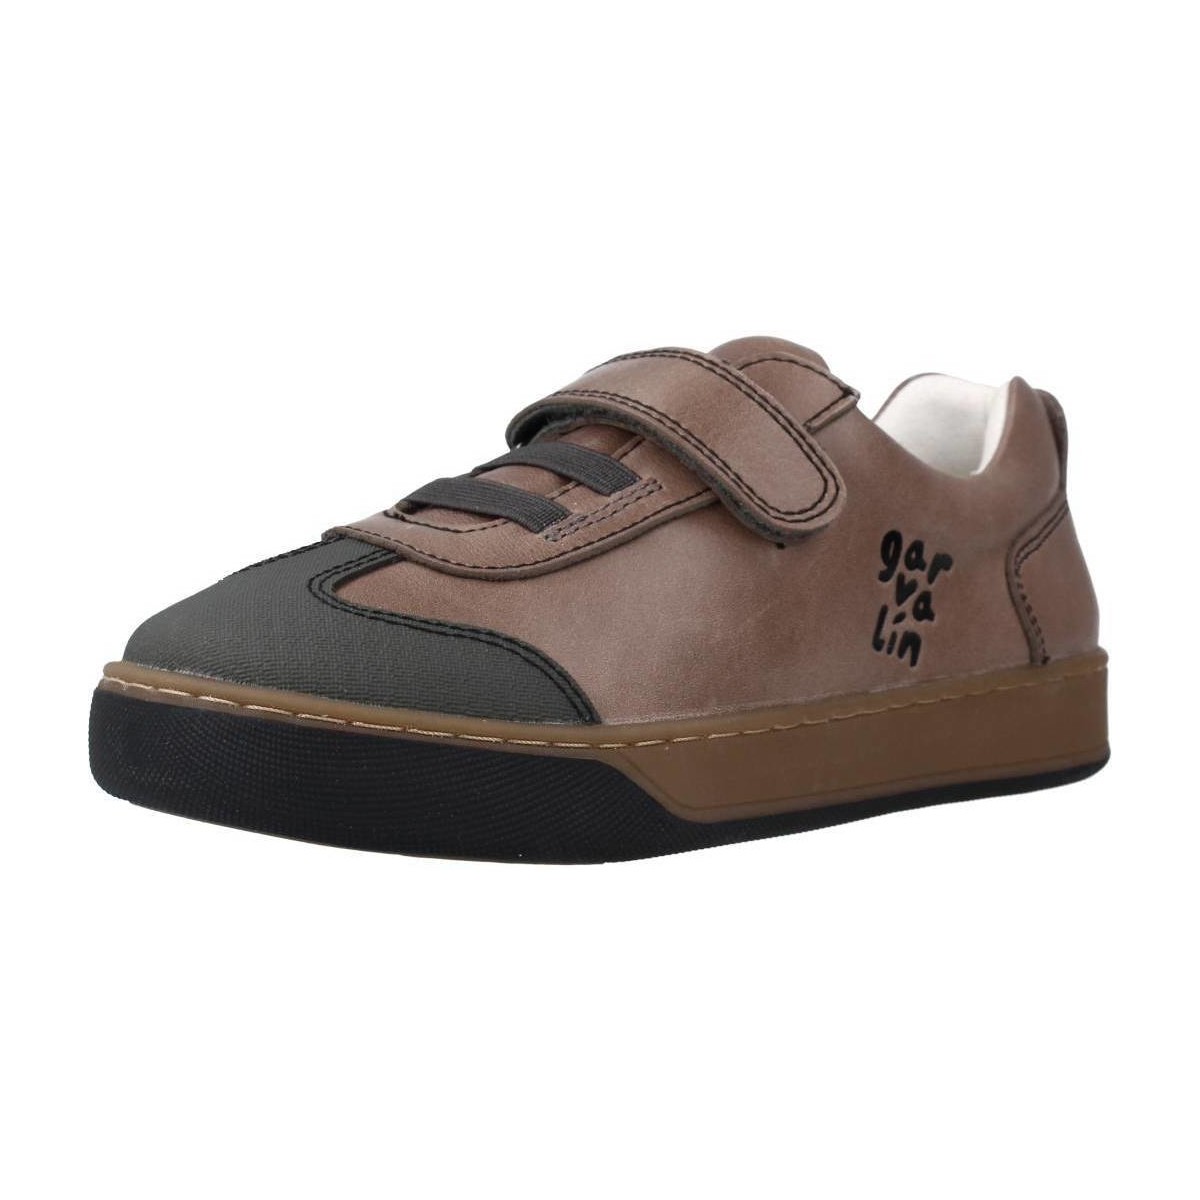 Chaussures Garçon Kennel + Schmeng 201450 Marron